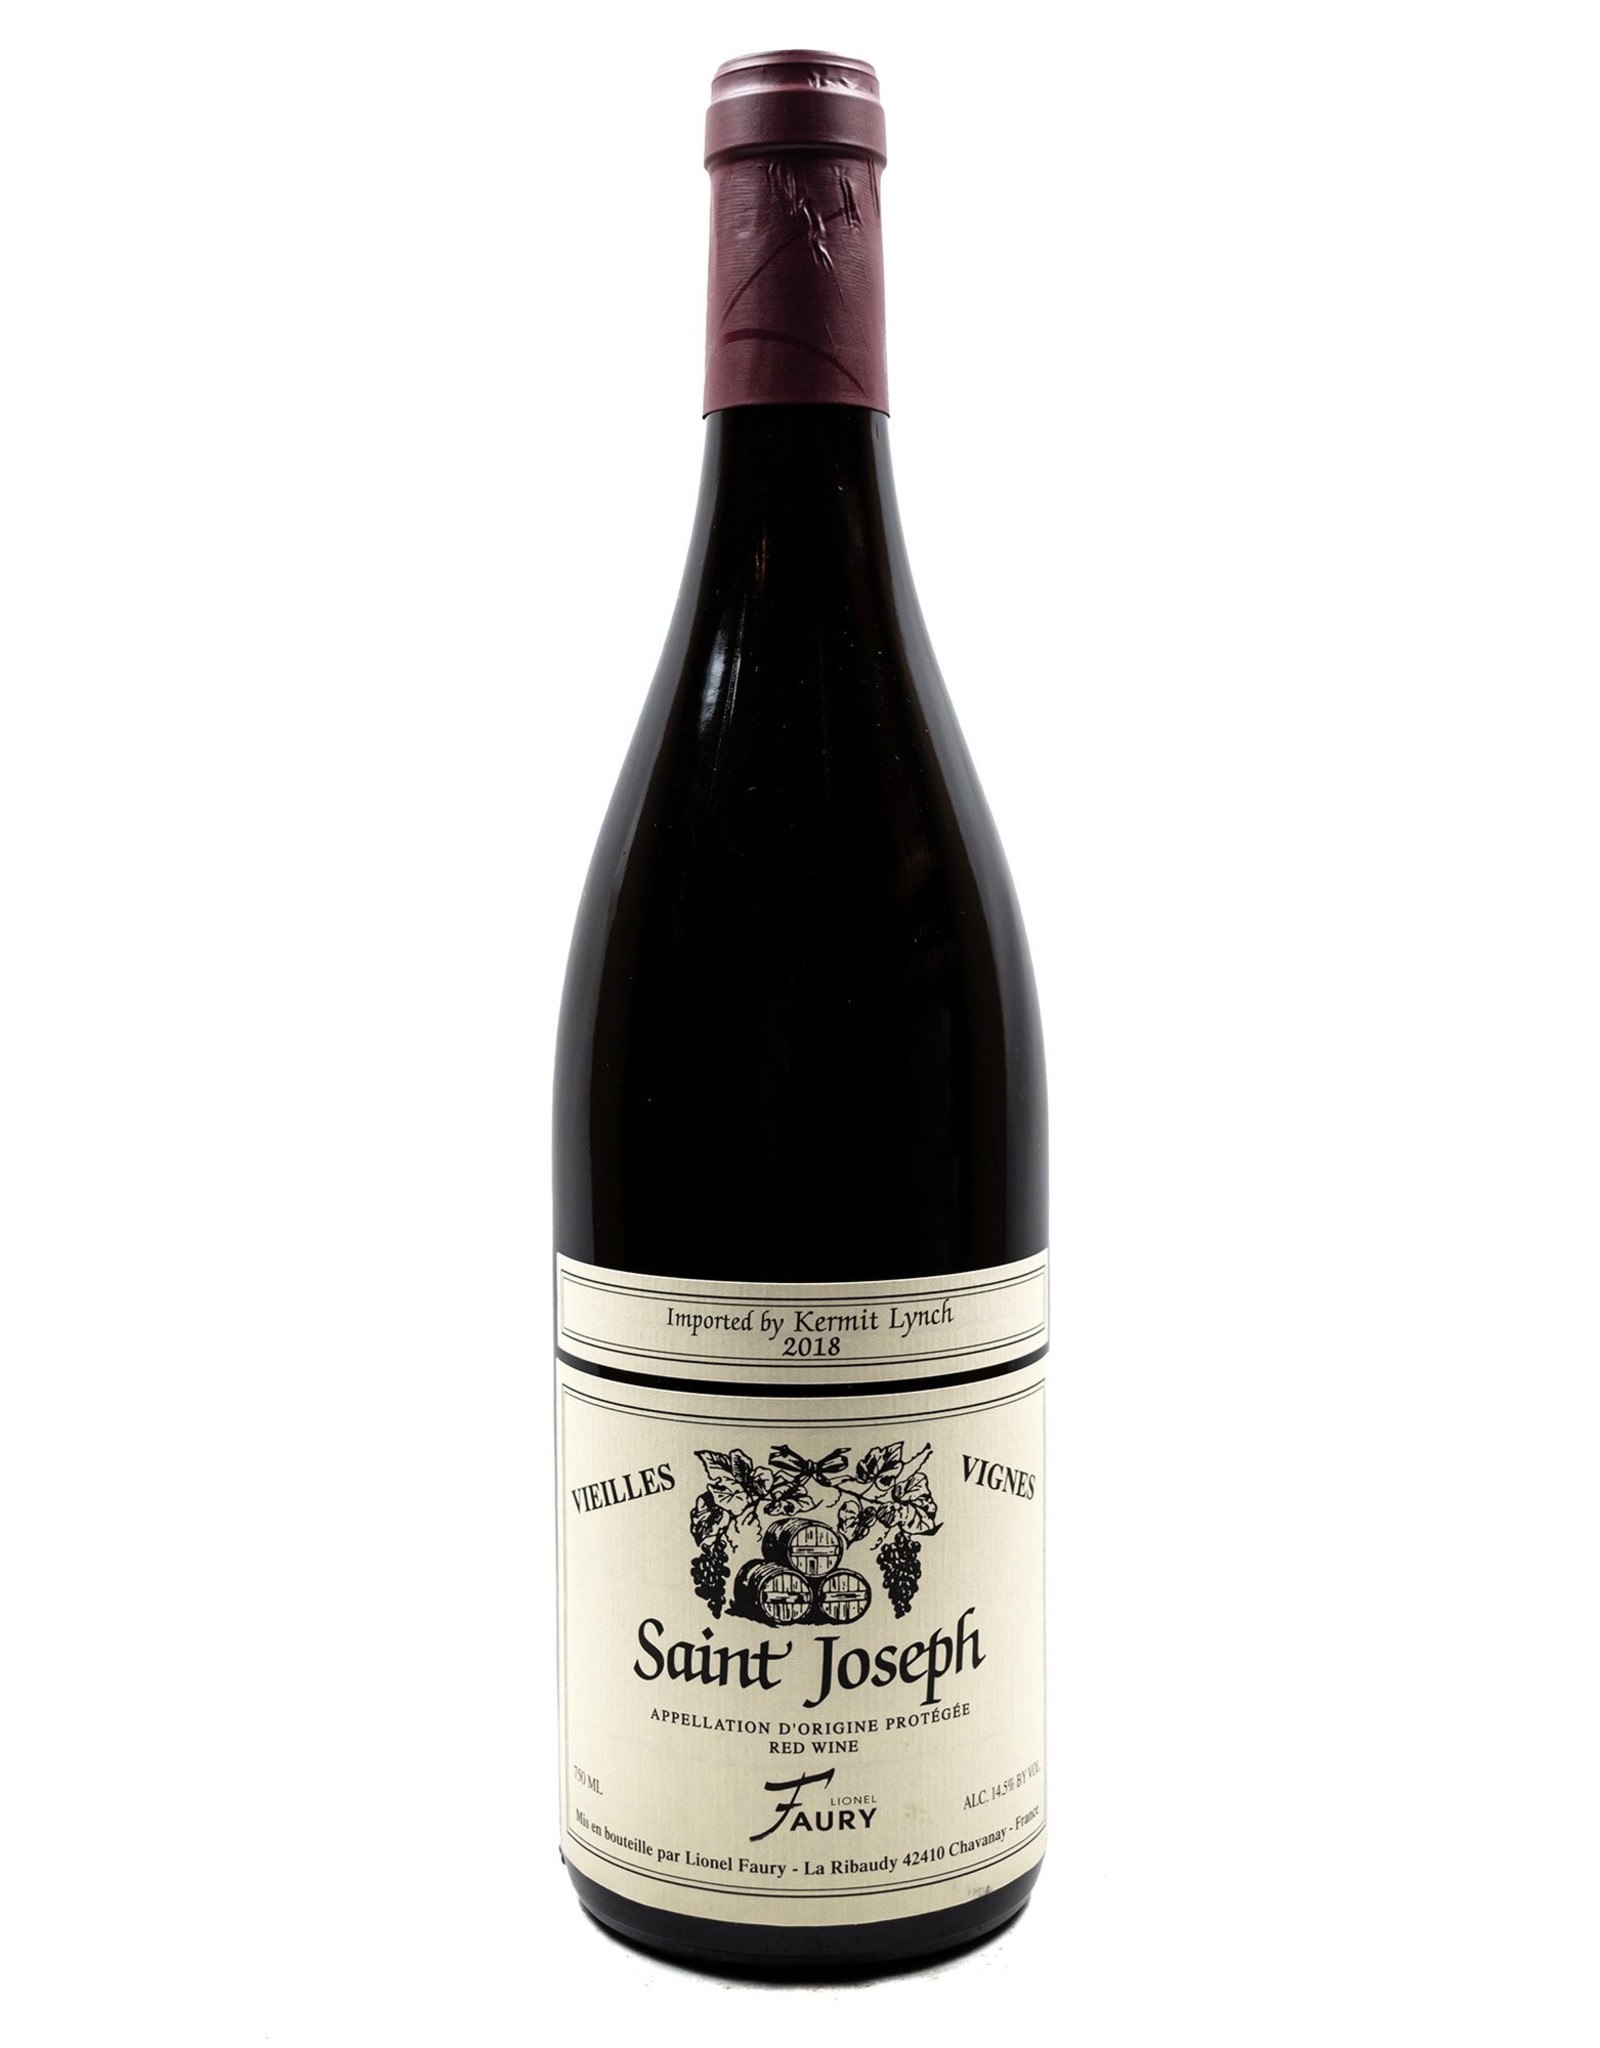 Faury Saint Joseph Vieilles Vignes